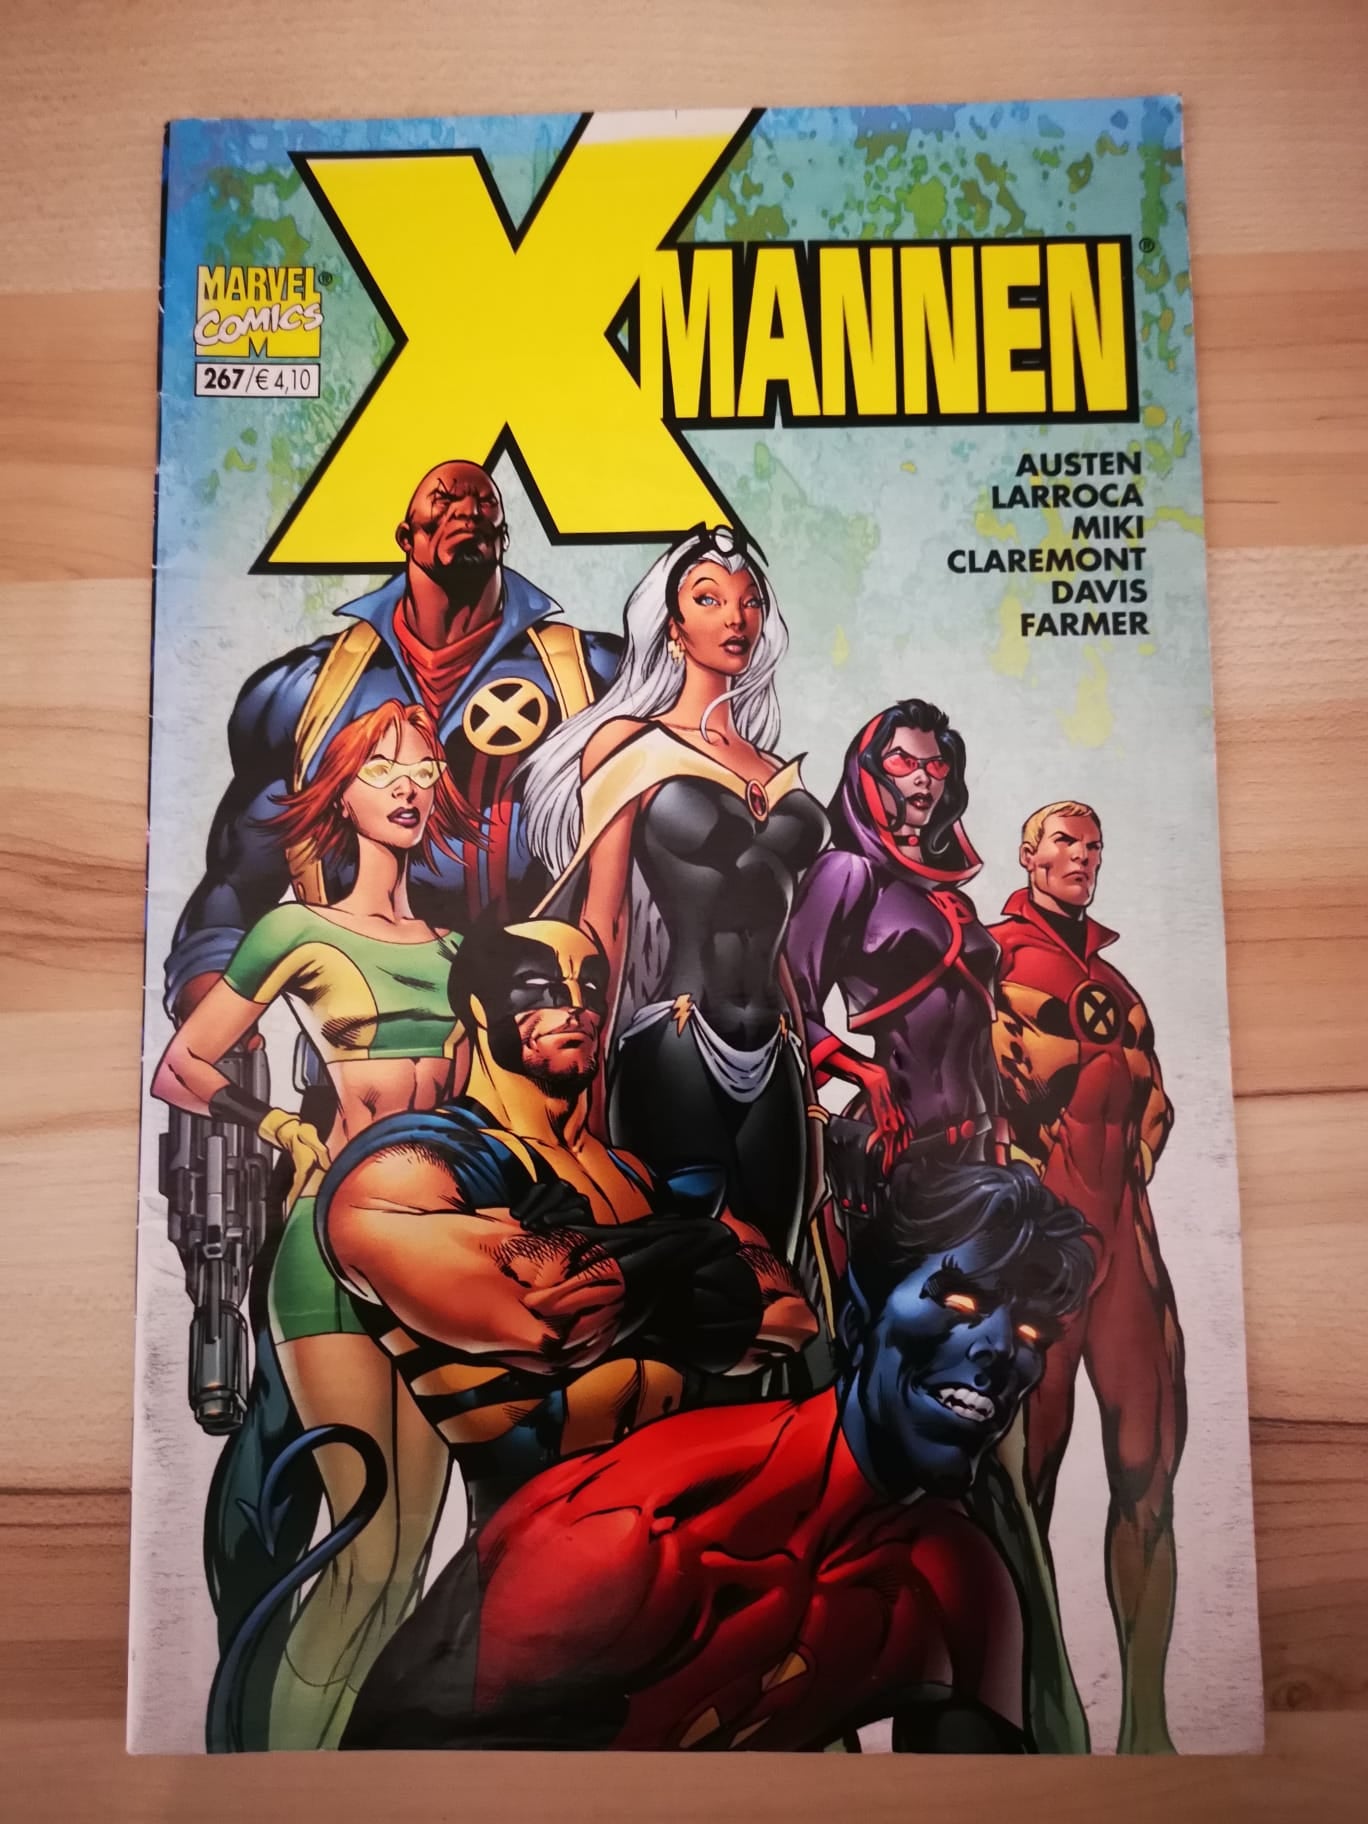 X-mannen #267